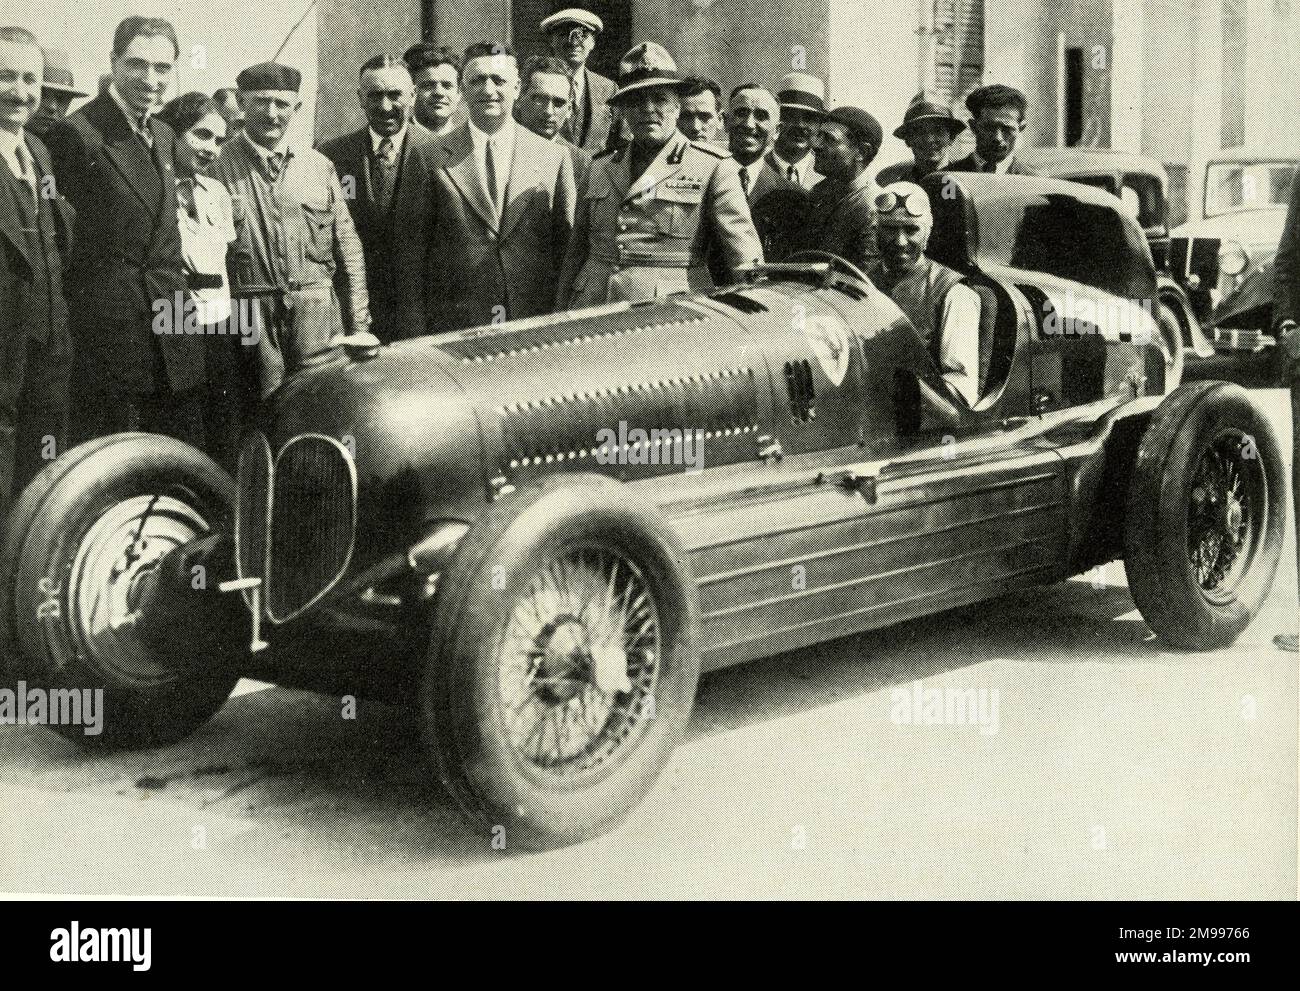 Nuvolari, pilota automobilistico, in un bimotore Alfa-Romeo al Grand Prix  di Tripoli Foto stock - Alamy